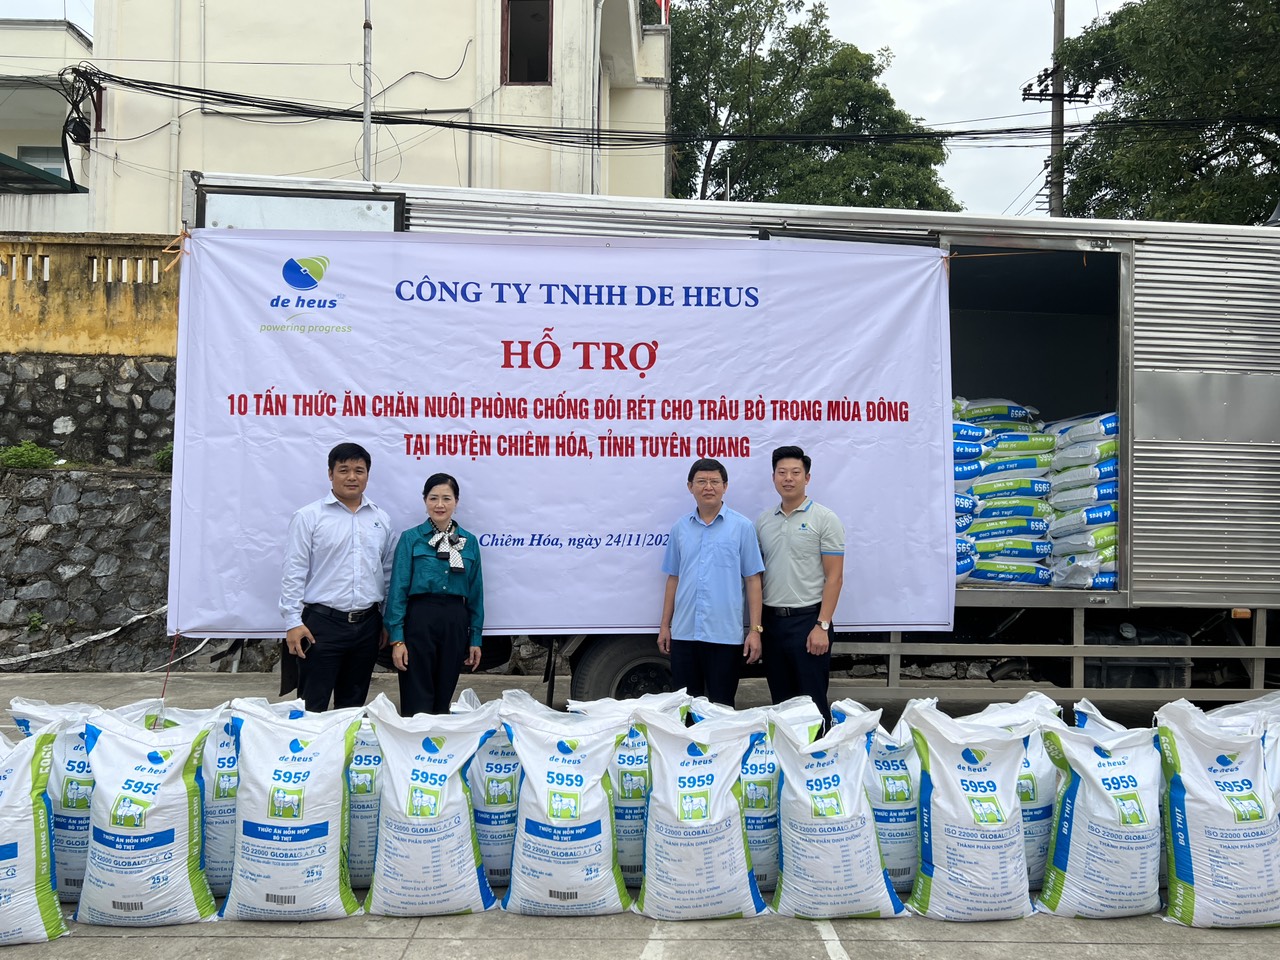 De Heus hỗ trợ 10 tấn thức ăn chăn nuôi, giúp nông dân Tuyên Quang phòng chống đói, rét cho trâu bò - Ảnh 2.